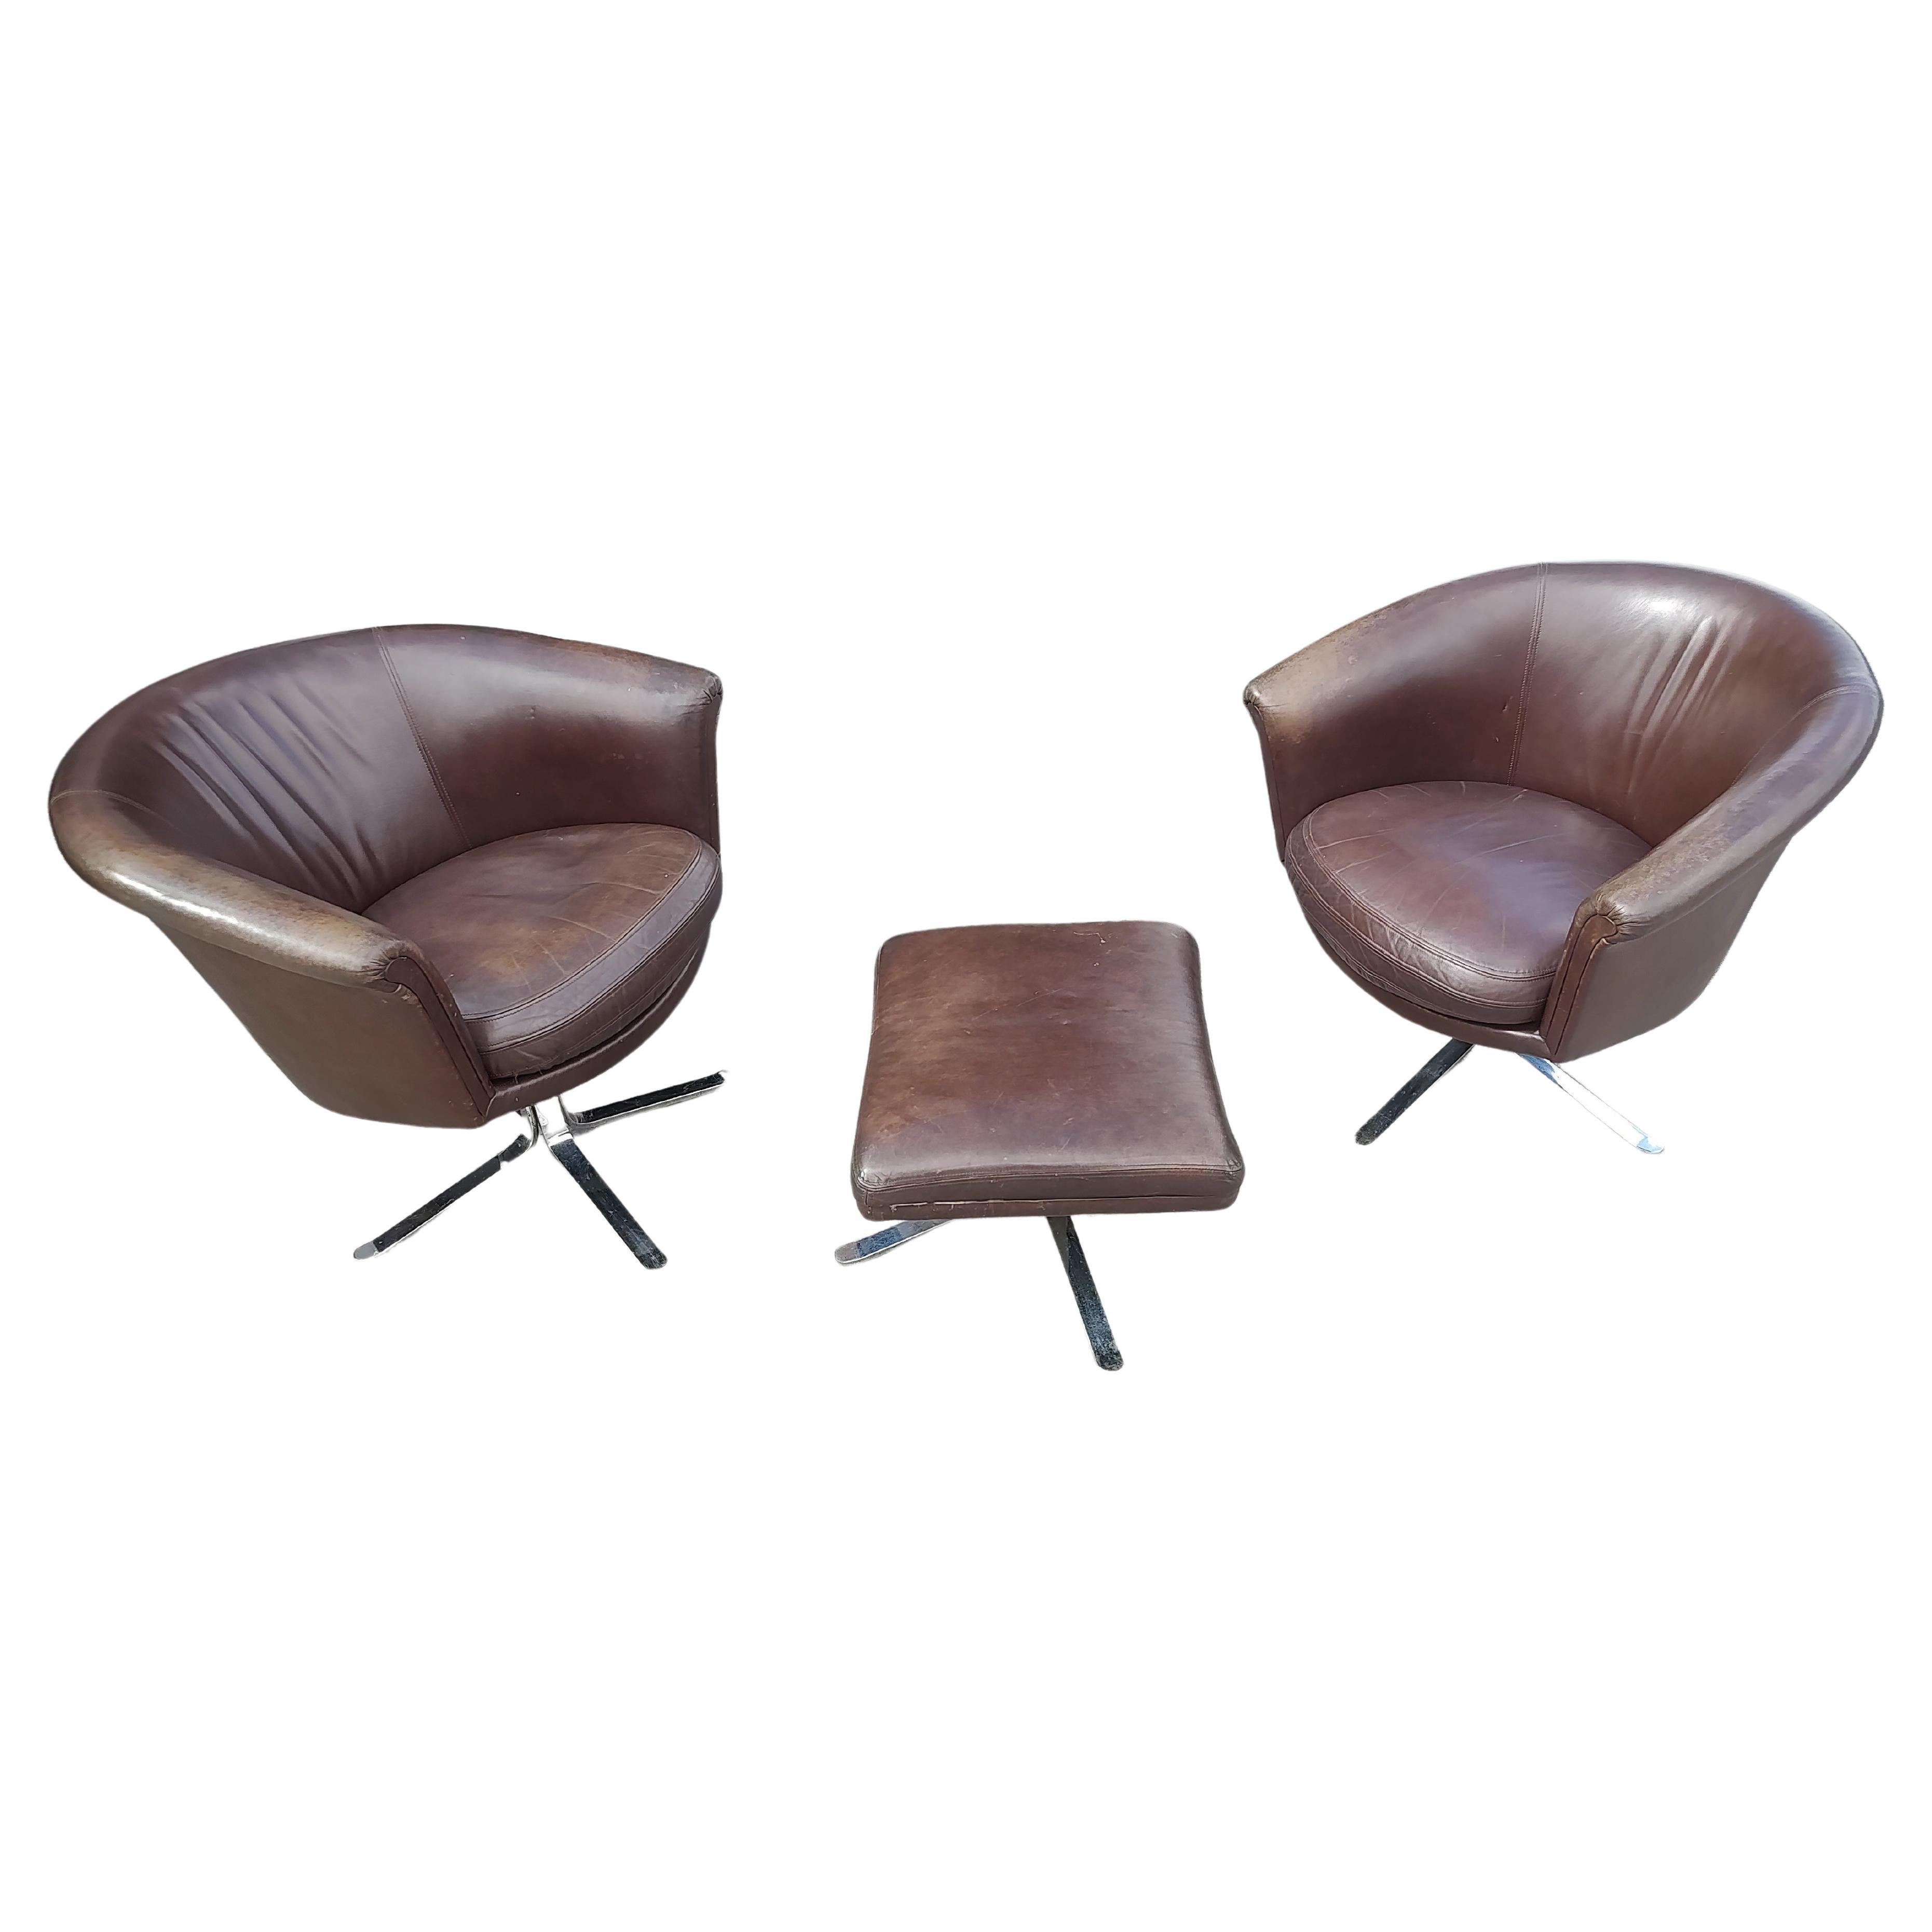 Fantastisches Paar Mid Century Modern Sculptural Swiveling Lounge Stühle in Leder mit einem Ottoman. Strapazierfähiger Rahmen mit viel Stil und Halt. Sehr bequem, ein Stuhl ist ein bisschen höher als der andere, 1,5 Zoll. Nicos Zographos Stühle mit